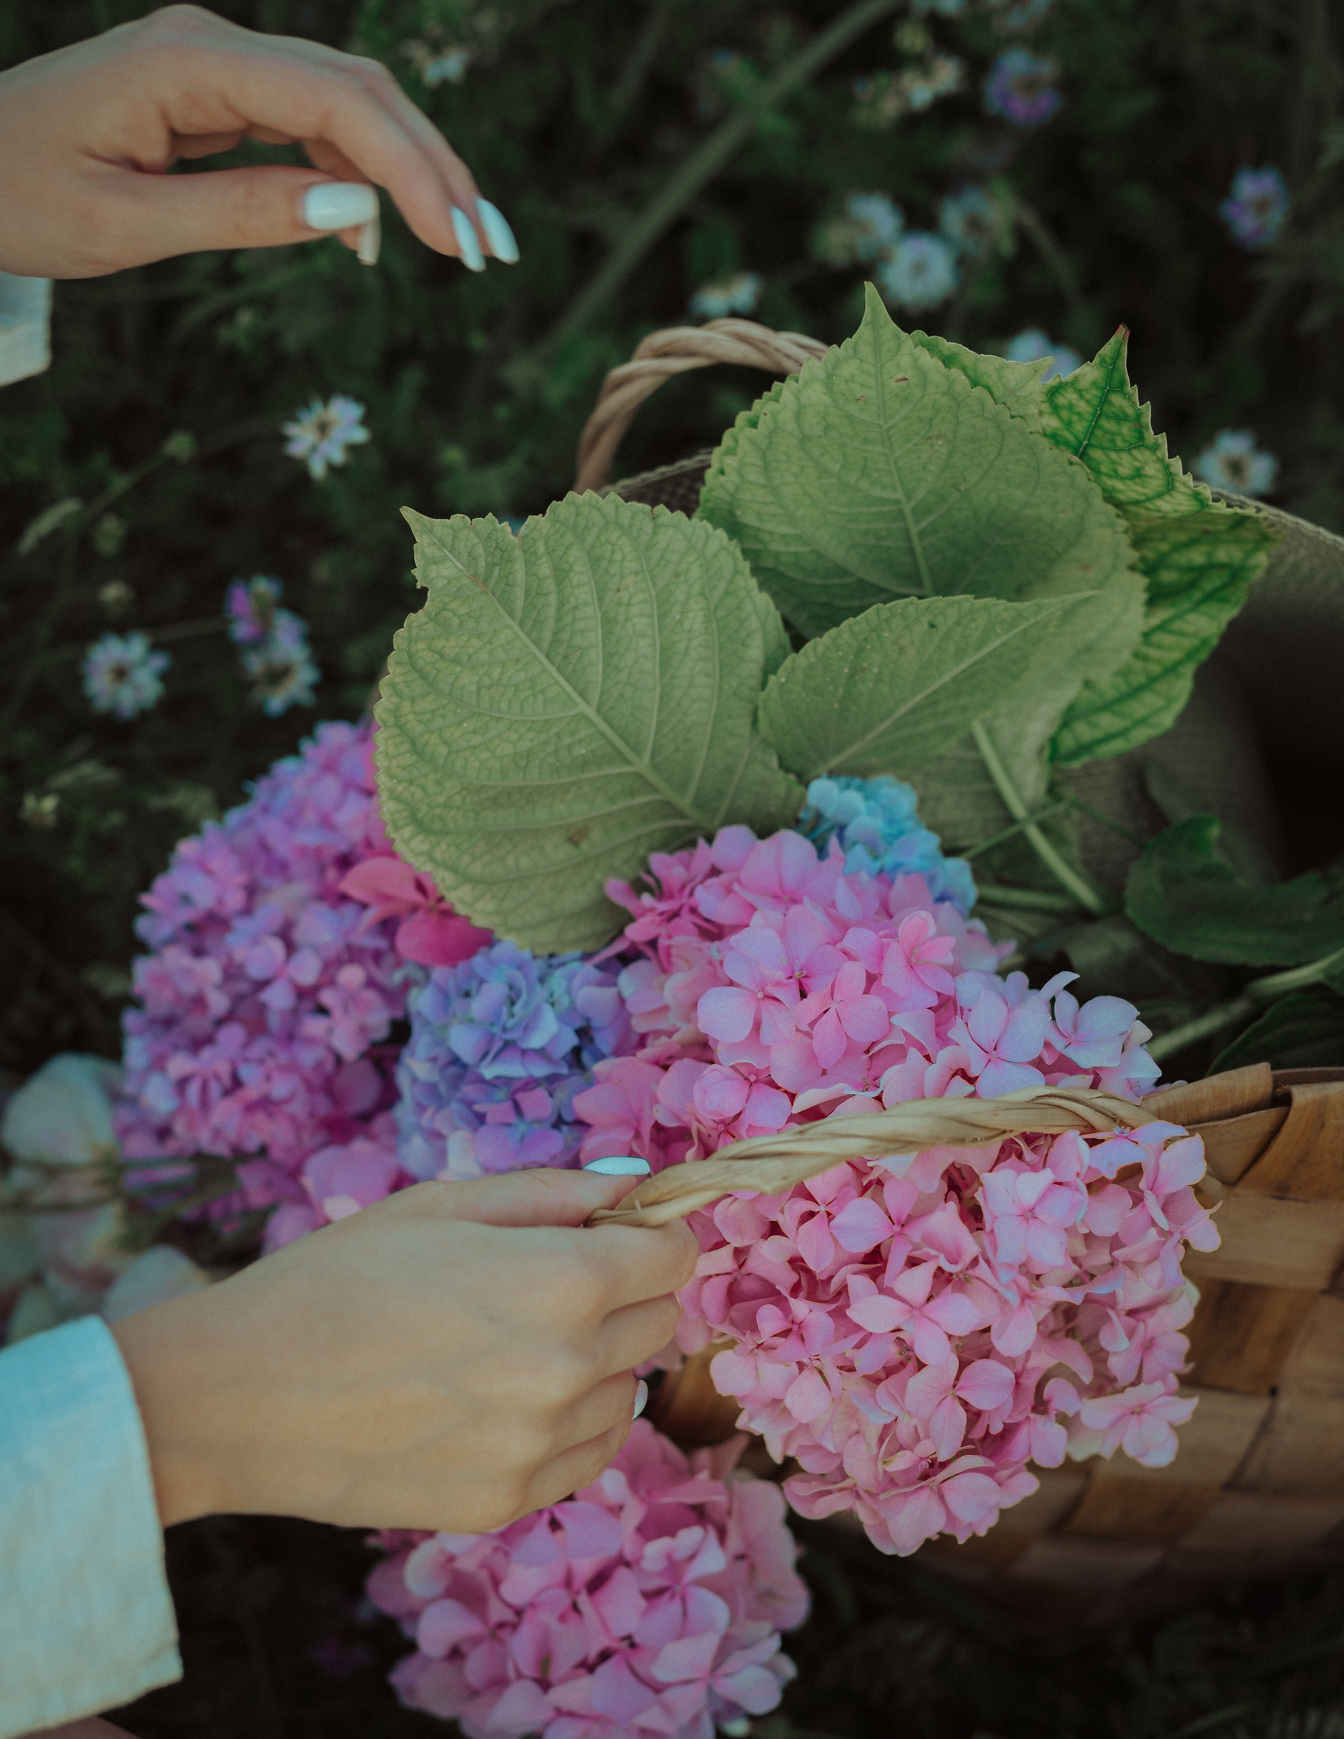 Flätad korg i handen med rosa och blå hortensiablommor